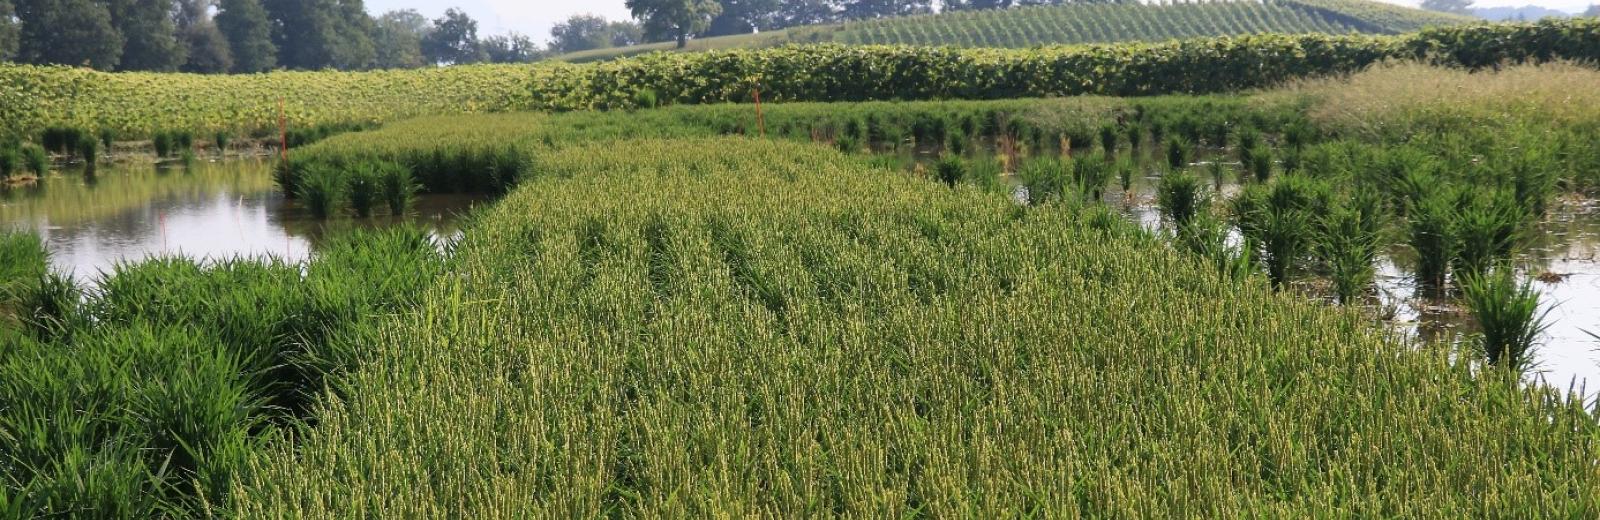 Agroscope ha provato a coltivare il riso a Schwadernau (Cantone di Berna) in collaborazione con Hans-Rudolf Mühlheim, agricoltore © Kathrin Hartmann